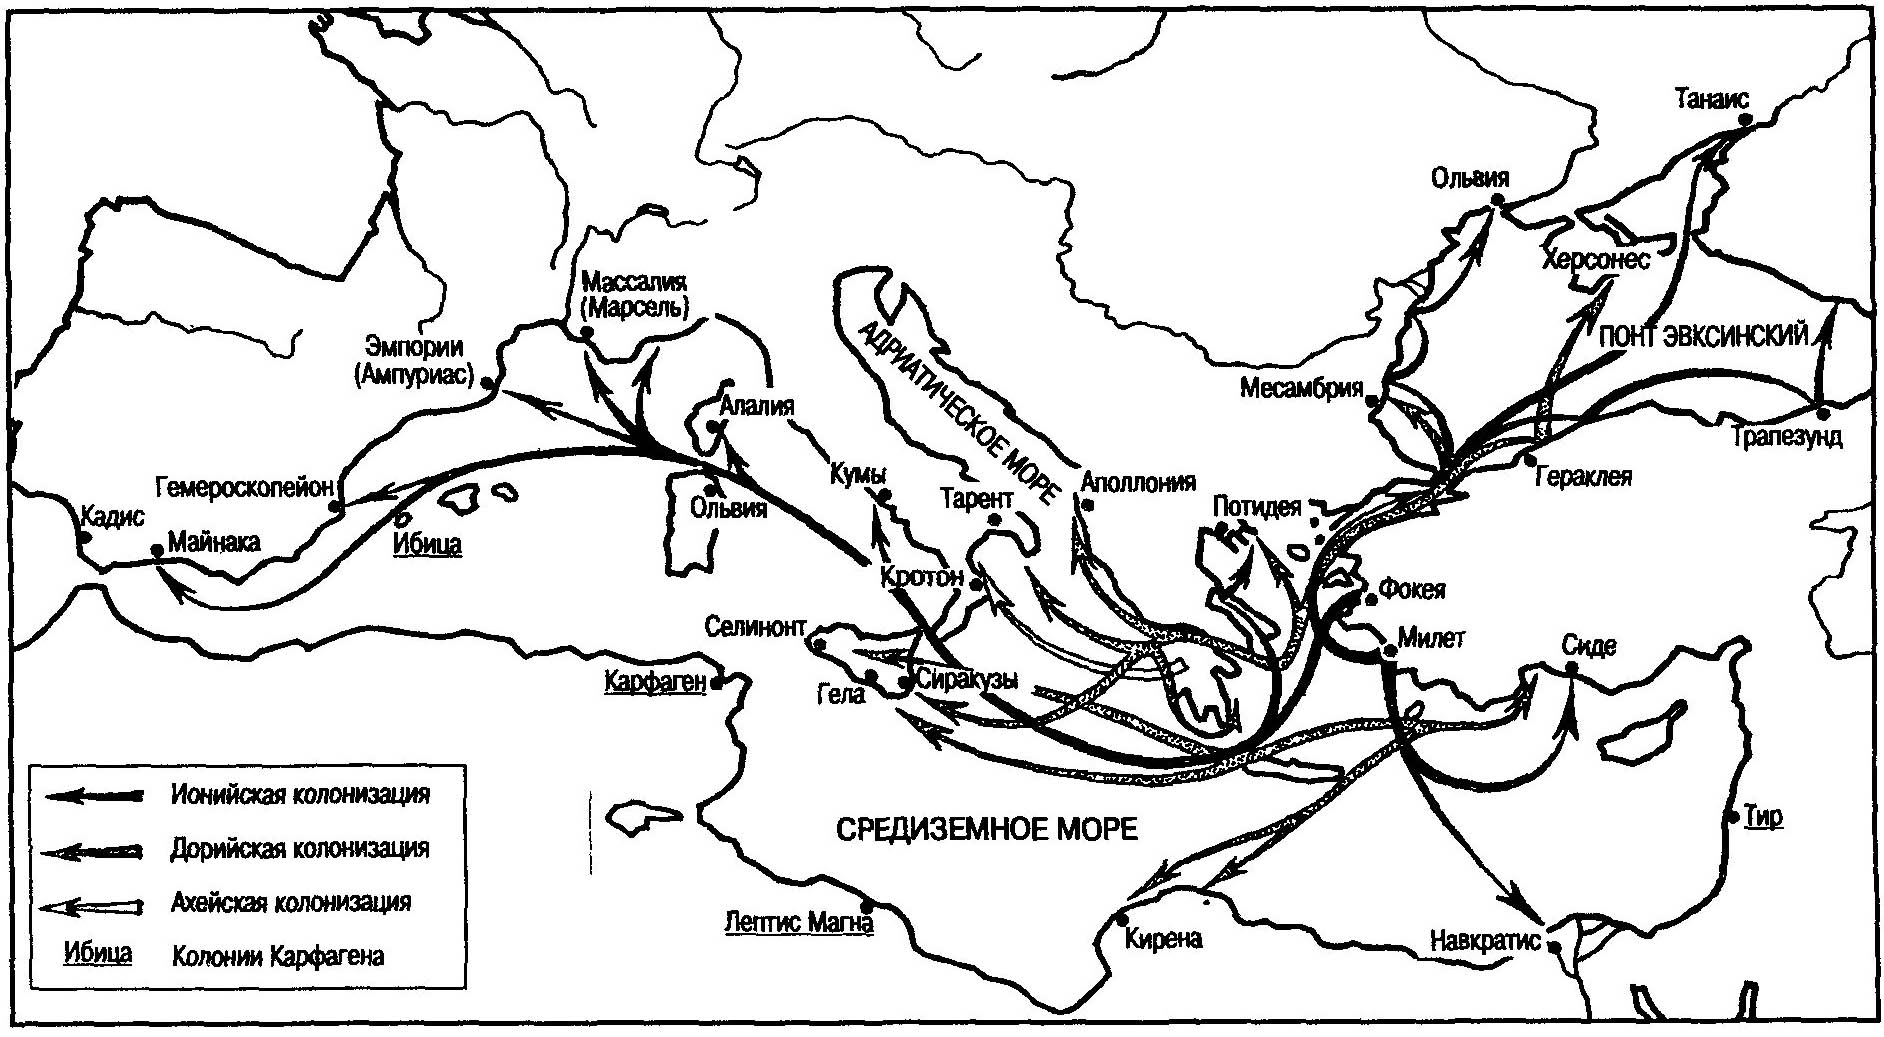 Греческая колонизация в Средиземноморье (VII — середина VI века до нашей эры)